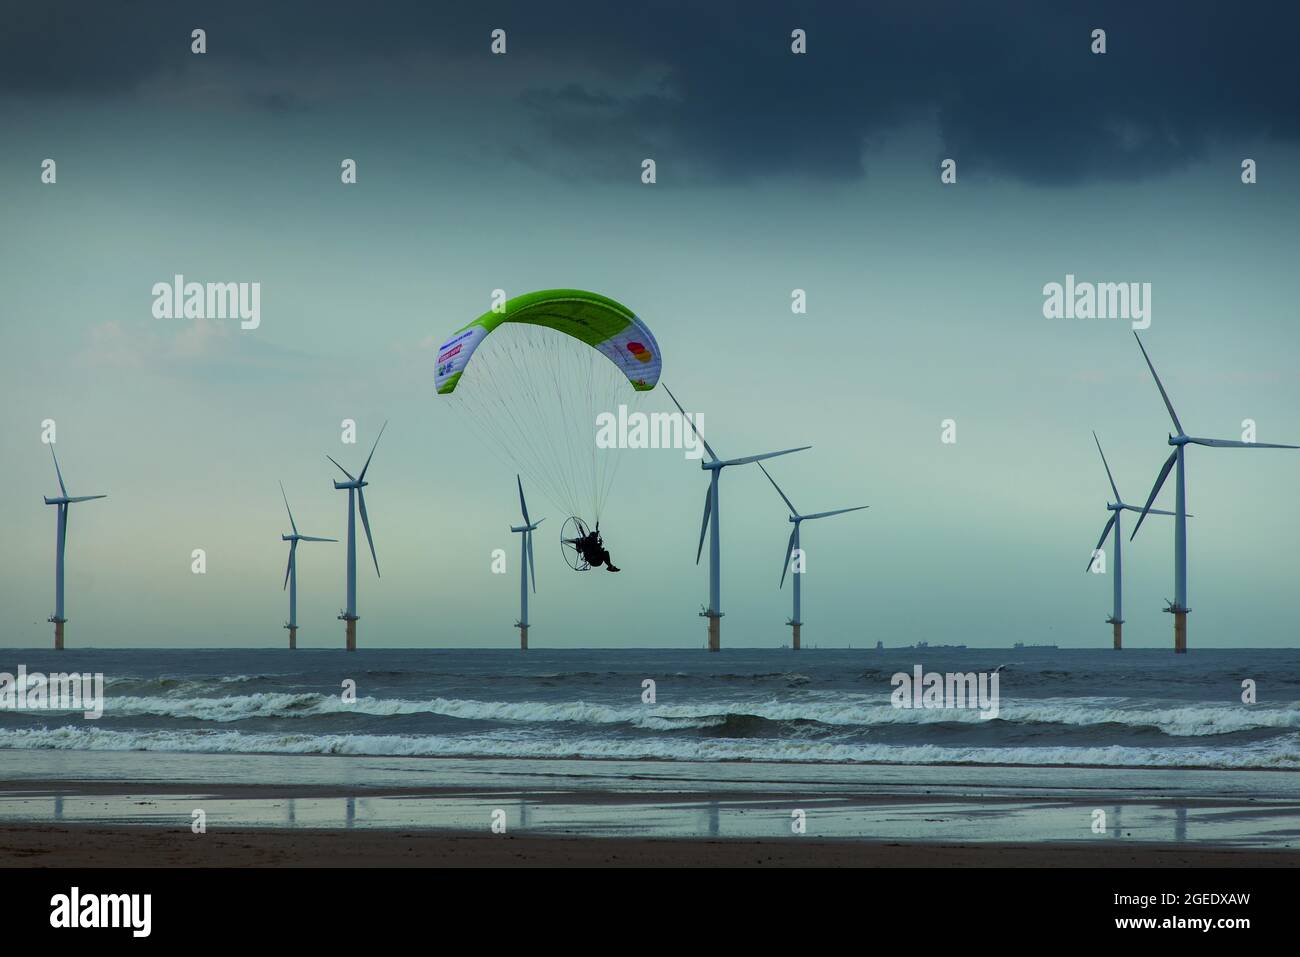 Sacha Dench le cygne humain volant son parapente électrique le long de Coatham Beach avec Teesside Windfarm au-delà. Redcar, Yorkshire du Nord, Angleterre Banque D'Images